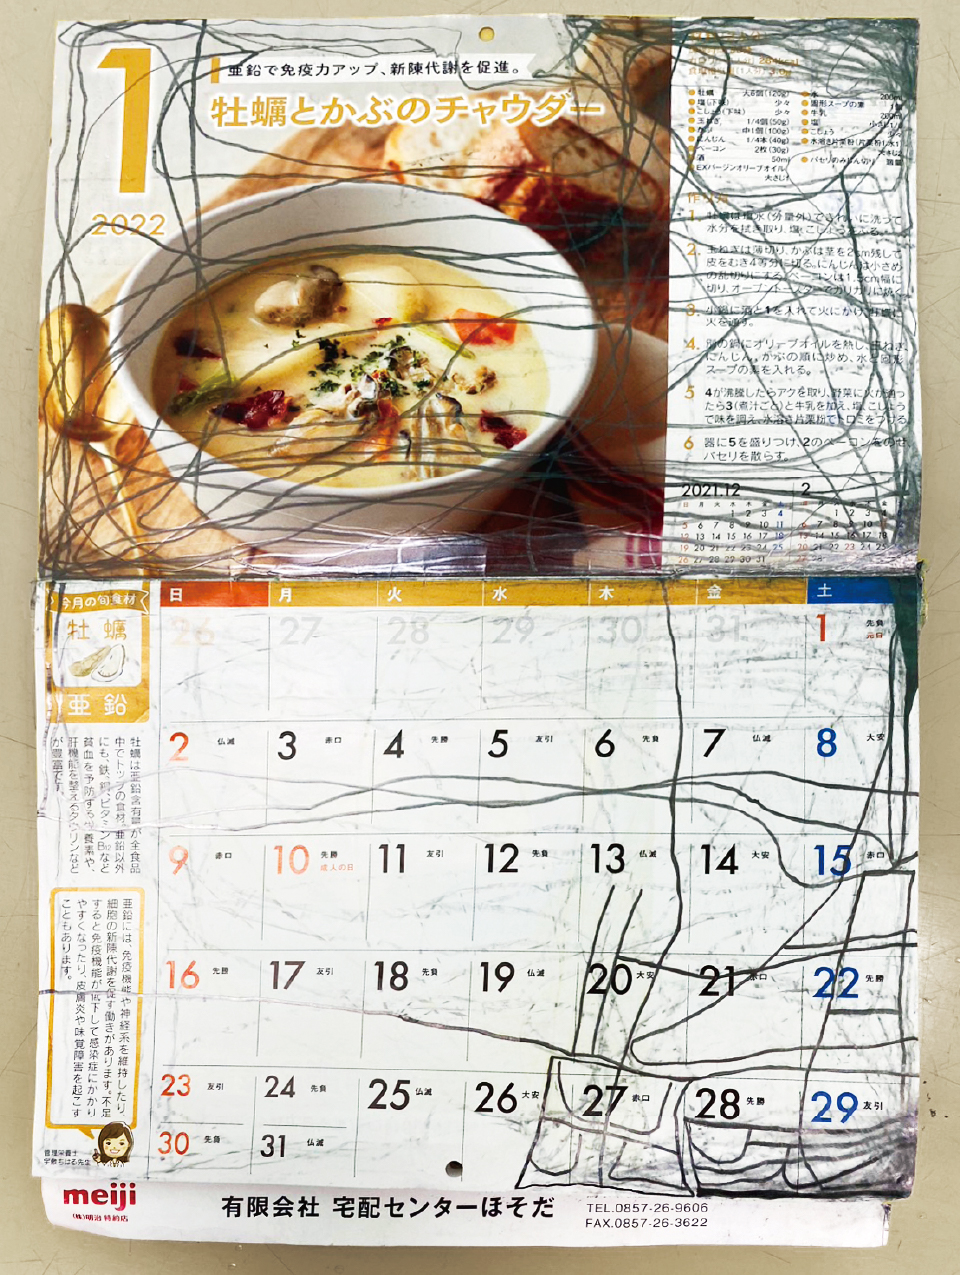 【写真】メインイメージ写真の全面。2022年1月の紙面がひらかれている。上部に「牡蠣とかぶのチャウダー」の料理写真とレシピ、下部に曜日・日付の表が掲載されている。鉛筆の線が、上部ではランダムに迂回するように、下部ではカレンダーの右下を中心に走っている。